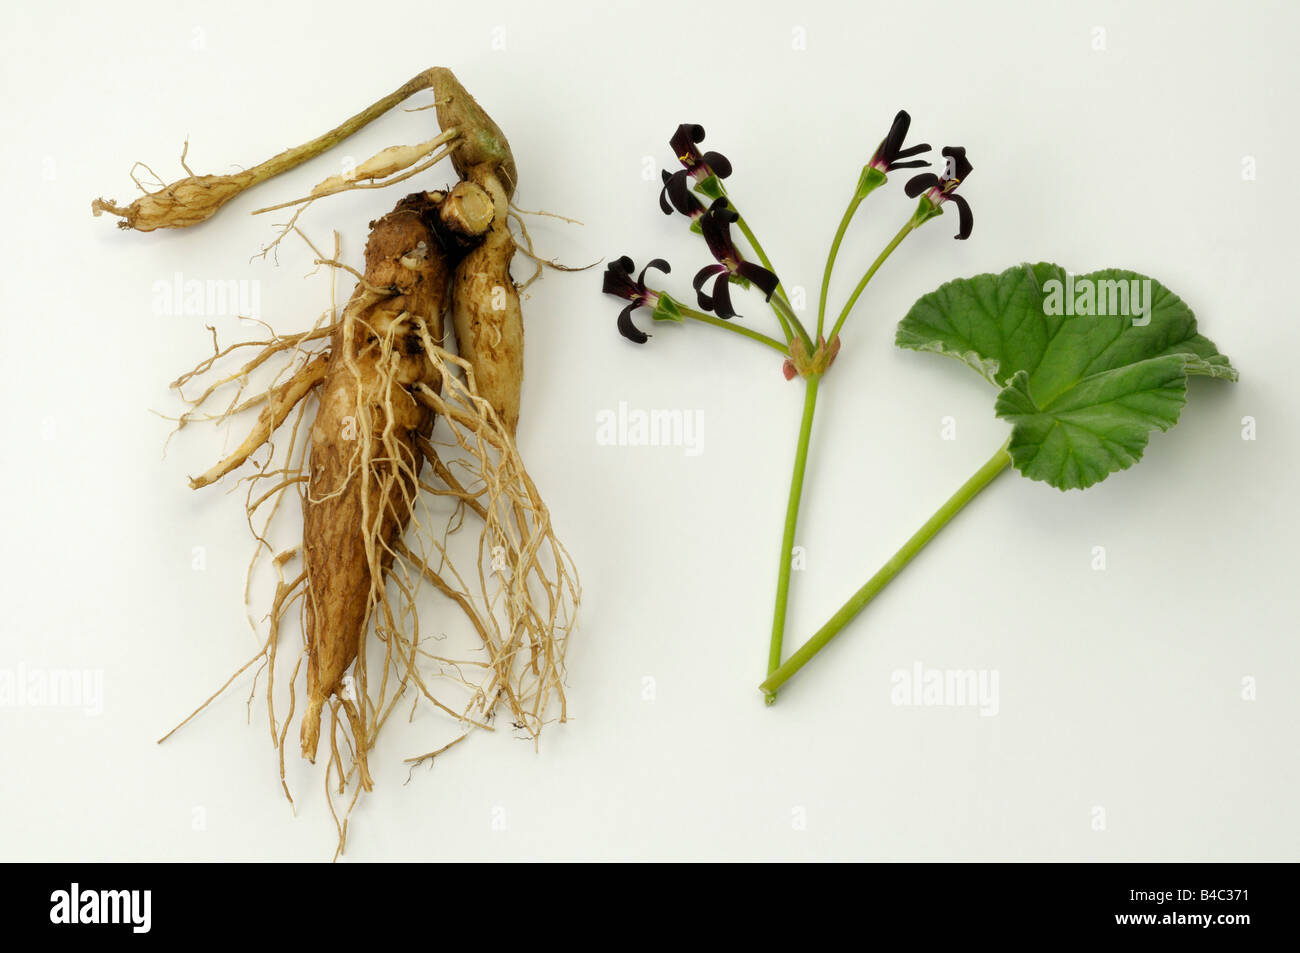 Umckaloabo (Pelargonium reniforme, Pelargonium sidoides), flowering plant and roots, studio picture Stock Photo